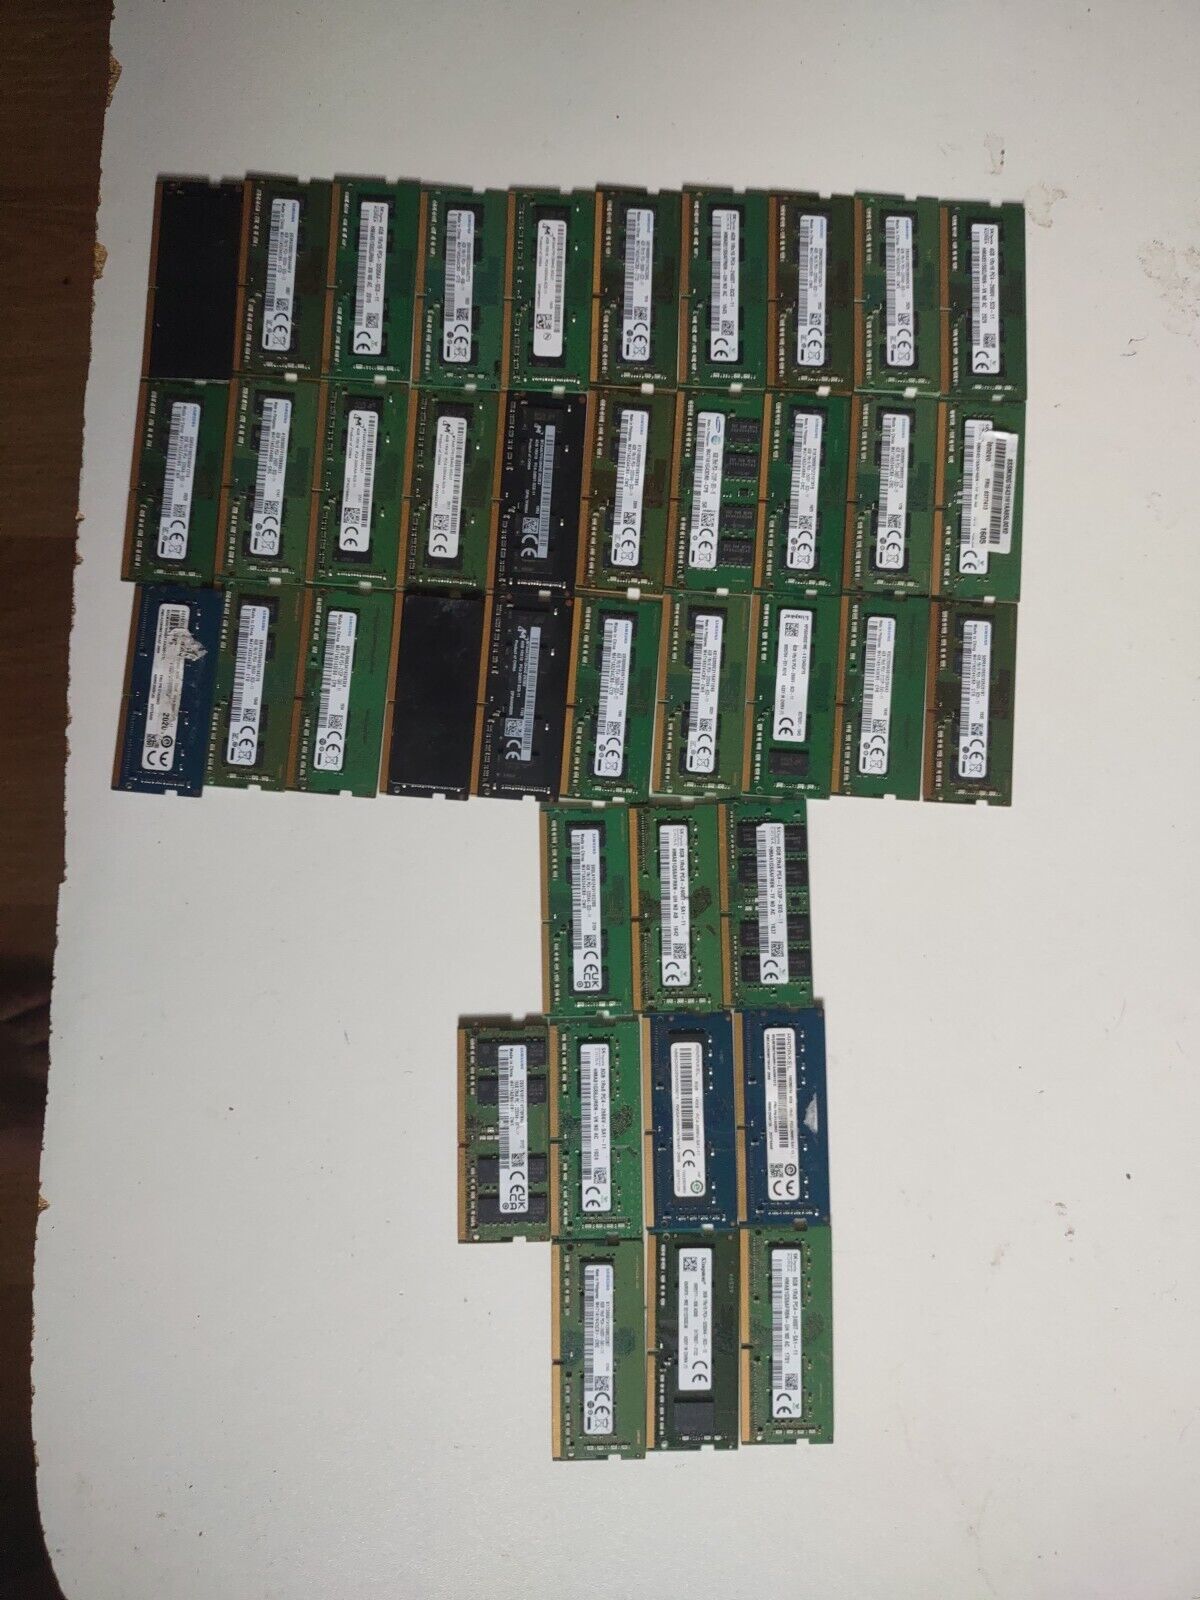 Lot Of 40 So-dimm PC4, 1x16gb, 9x 8 GB, 30x 4gb PC4 